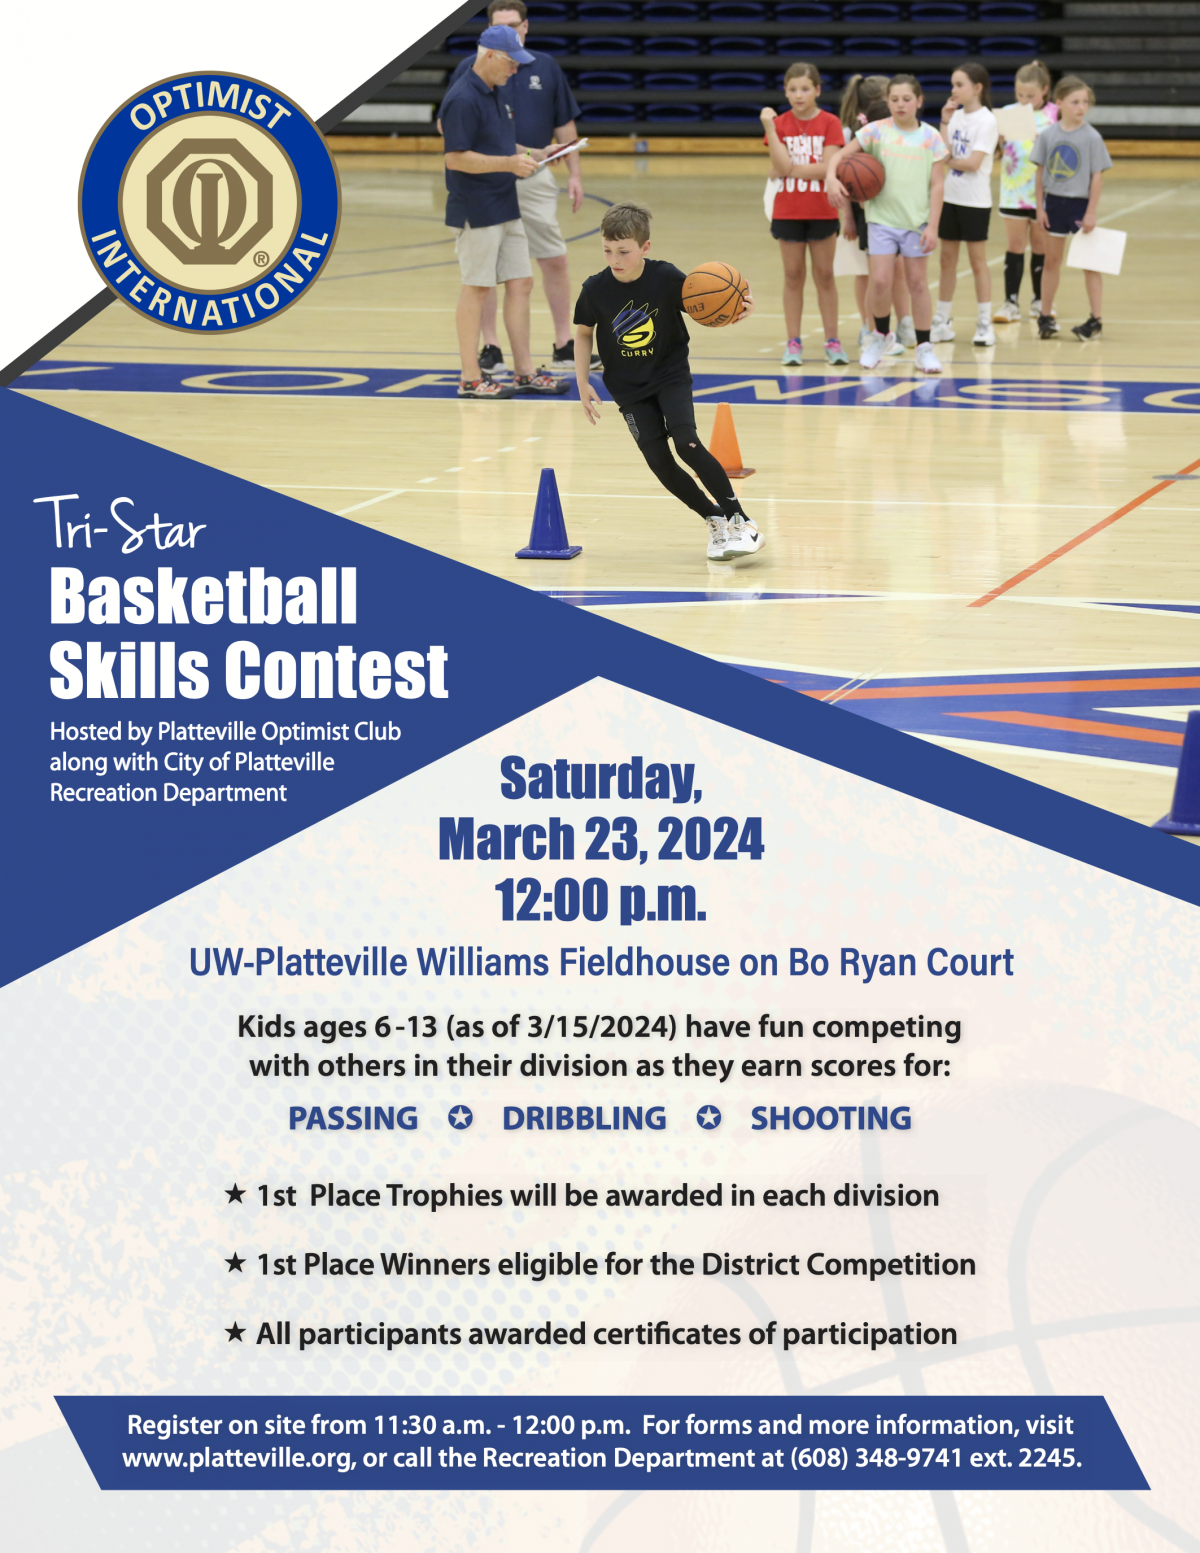 Optimist Tri-Star Basketball Skills Contest Flyer